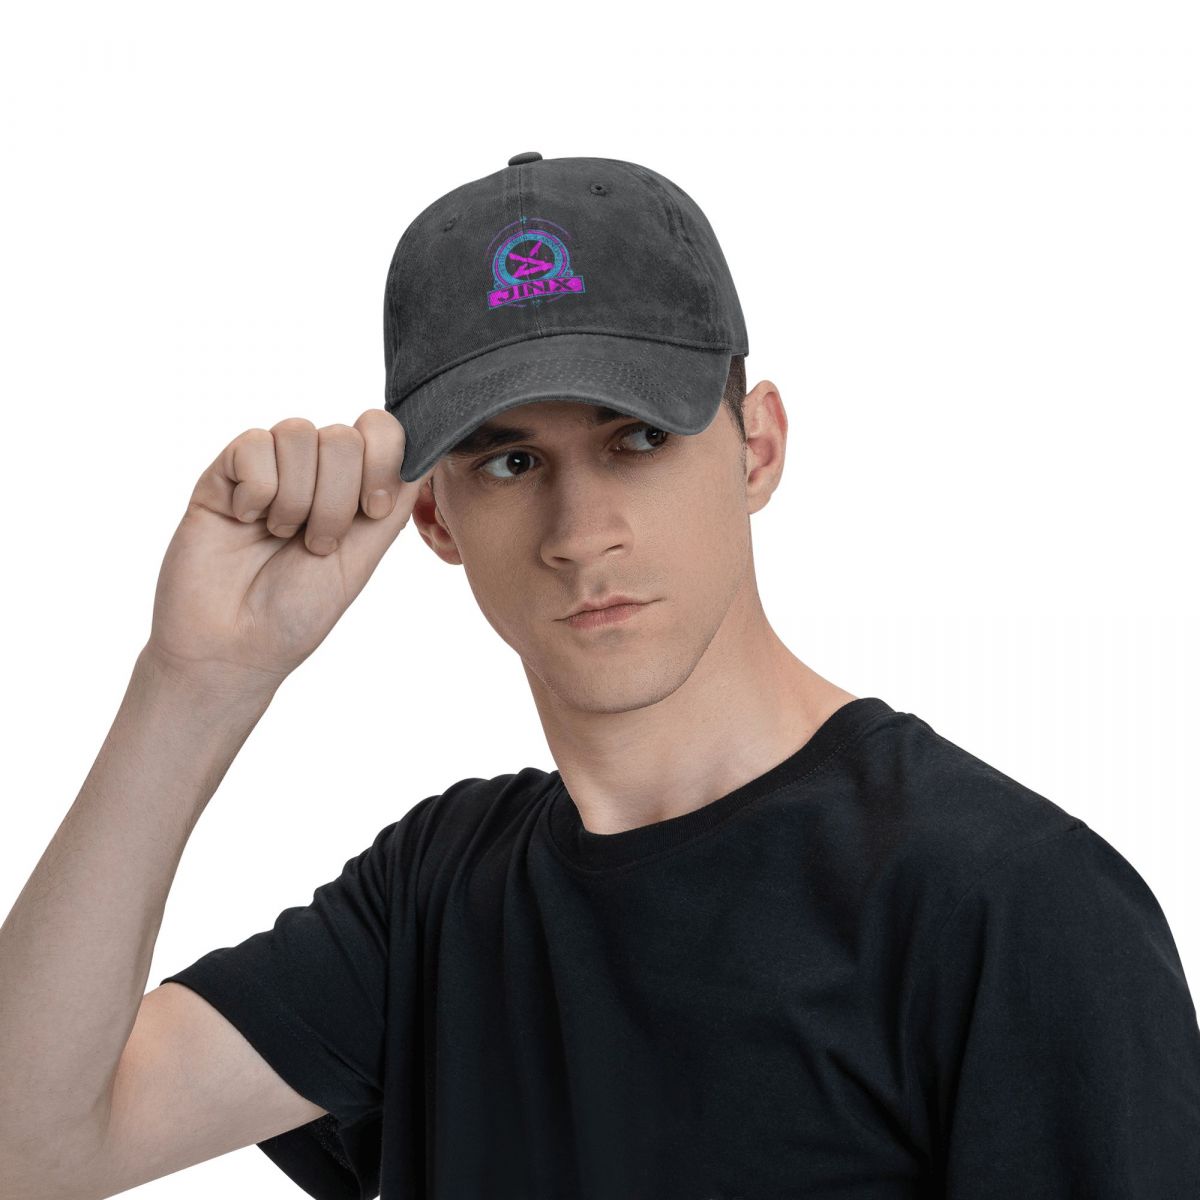 JINX Trucker Snapback Cap - League of Legends Fan Store